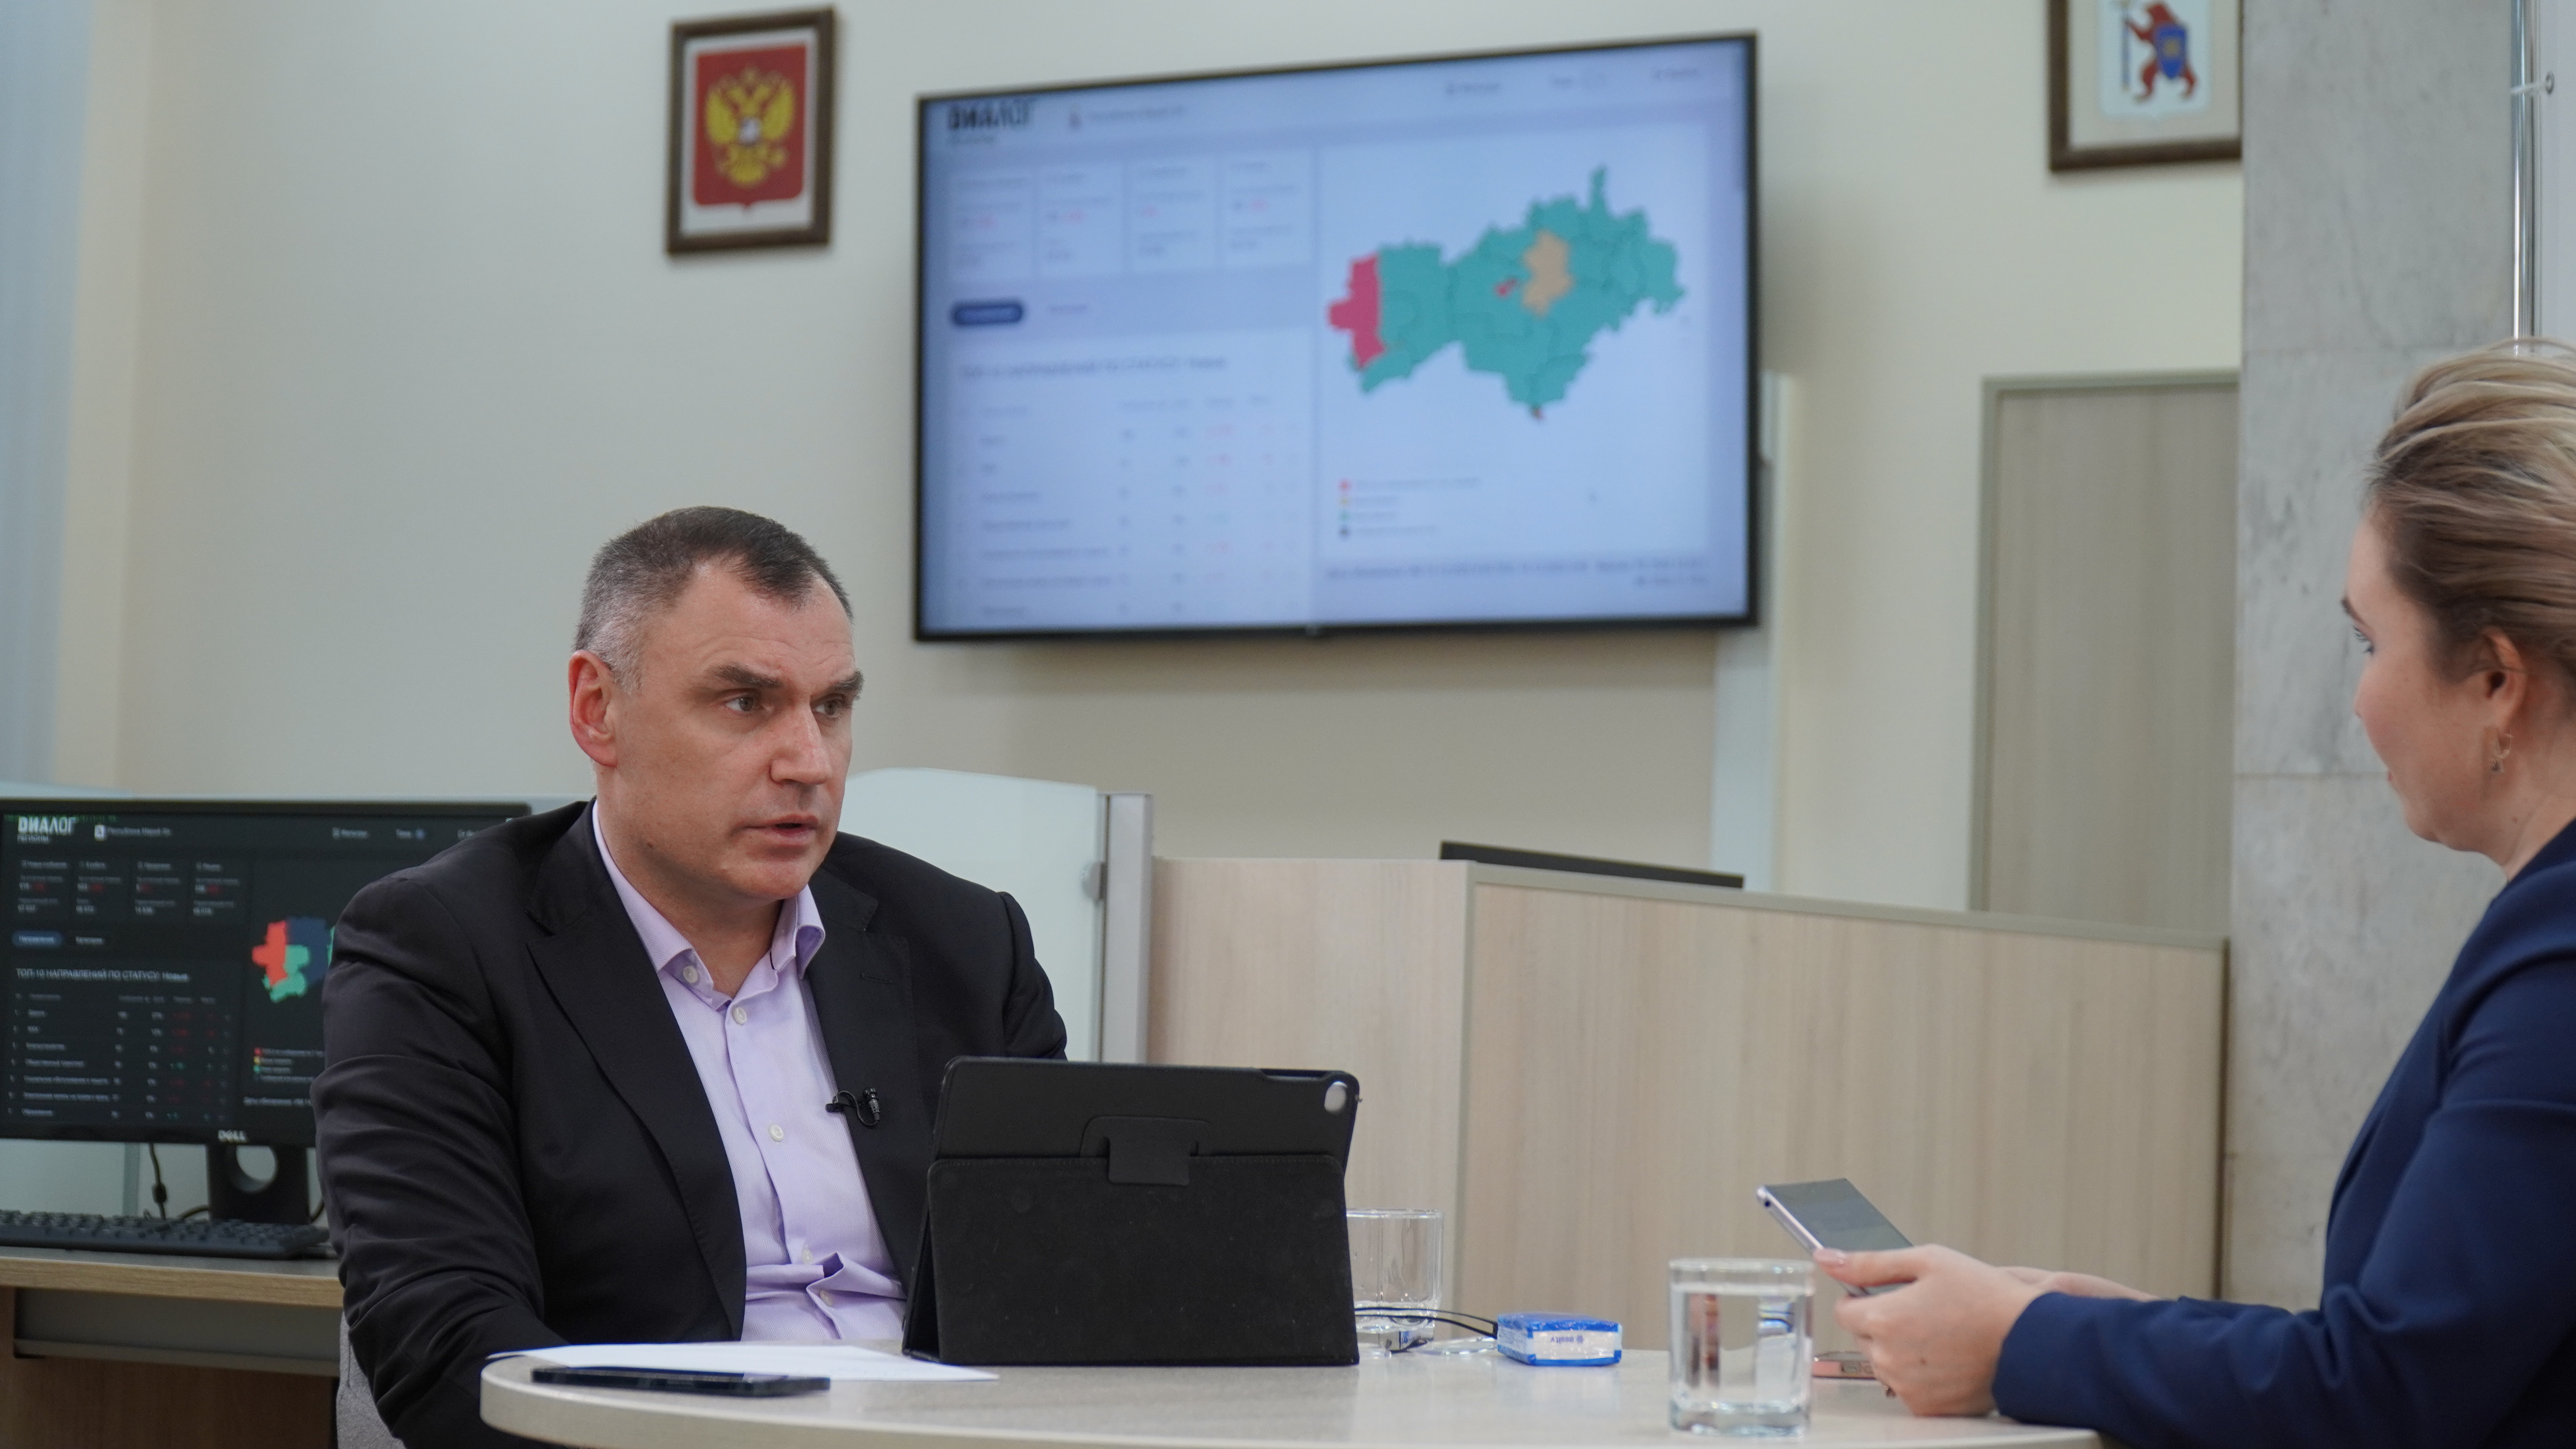 Юрий Зайцев рассказал о решении проблем в образовании, транспортной и социальной сферах региона